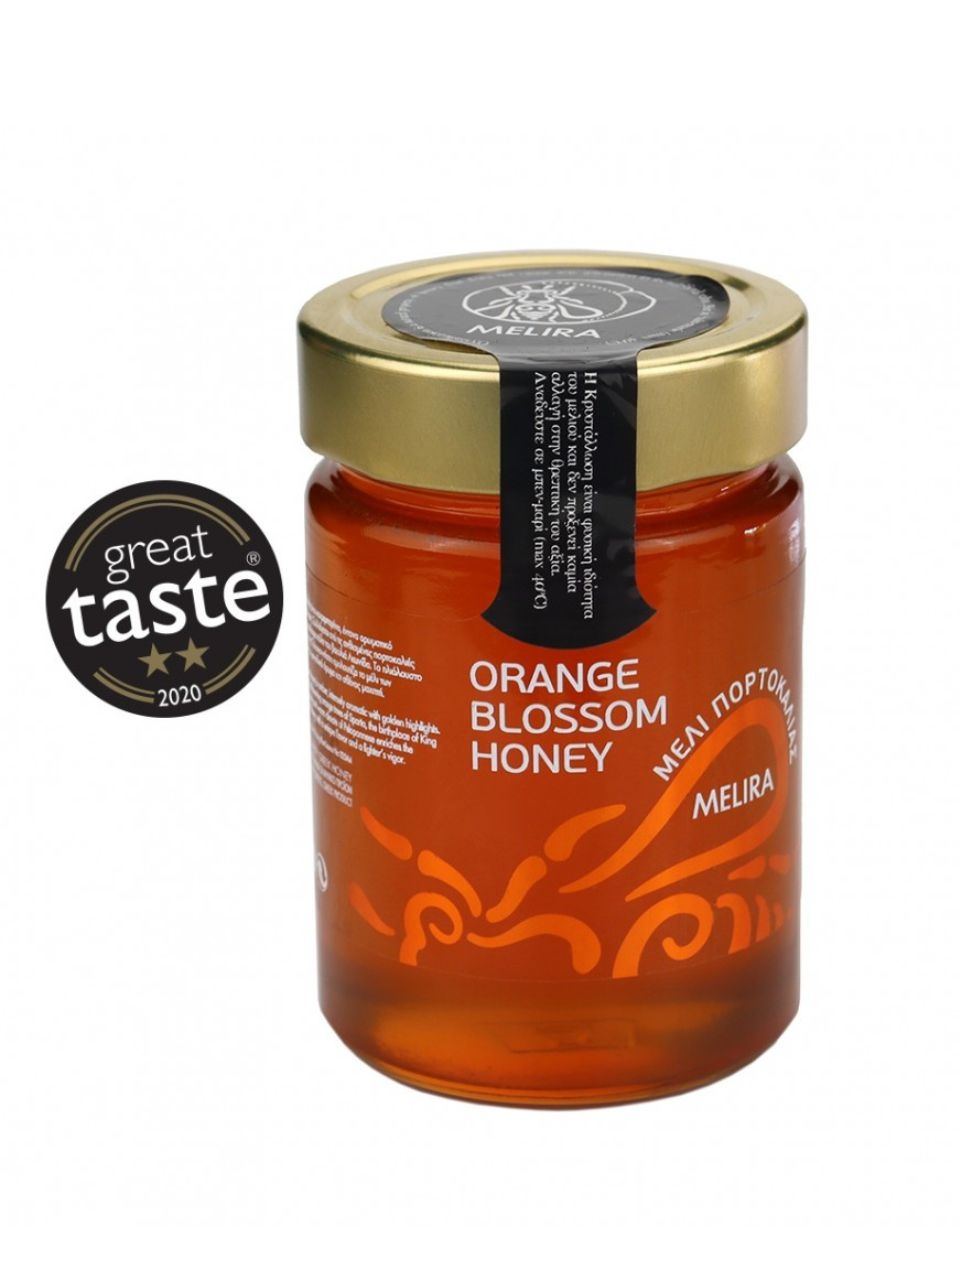 Μέλι Ανθέων Πορτοκαλιάς Εύβοιας "Melira" 450g > 002962